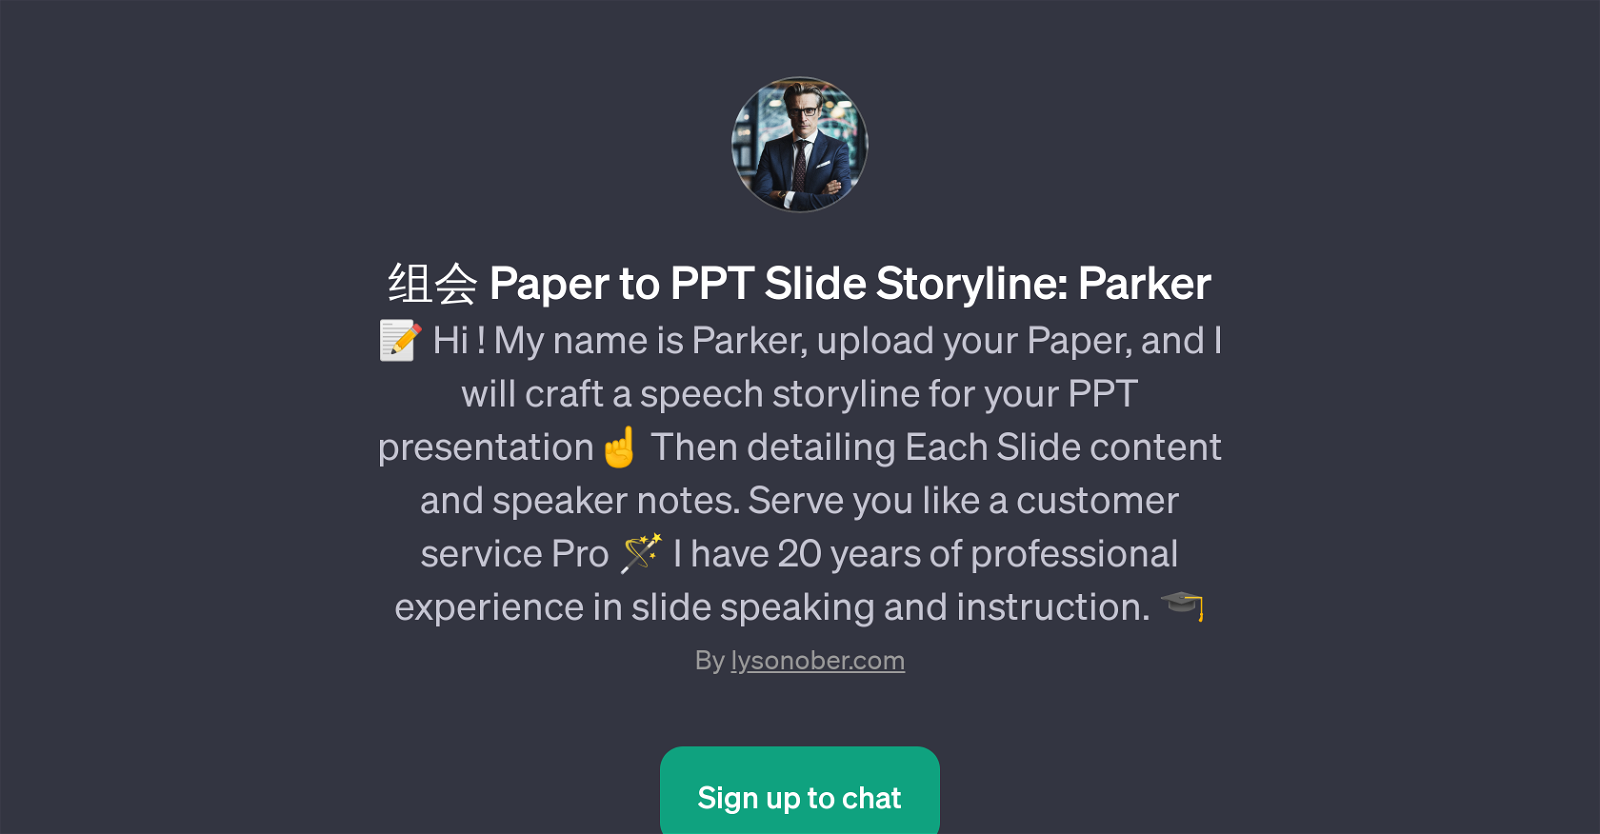 Paper to PPT Slide Storyline: Parker website